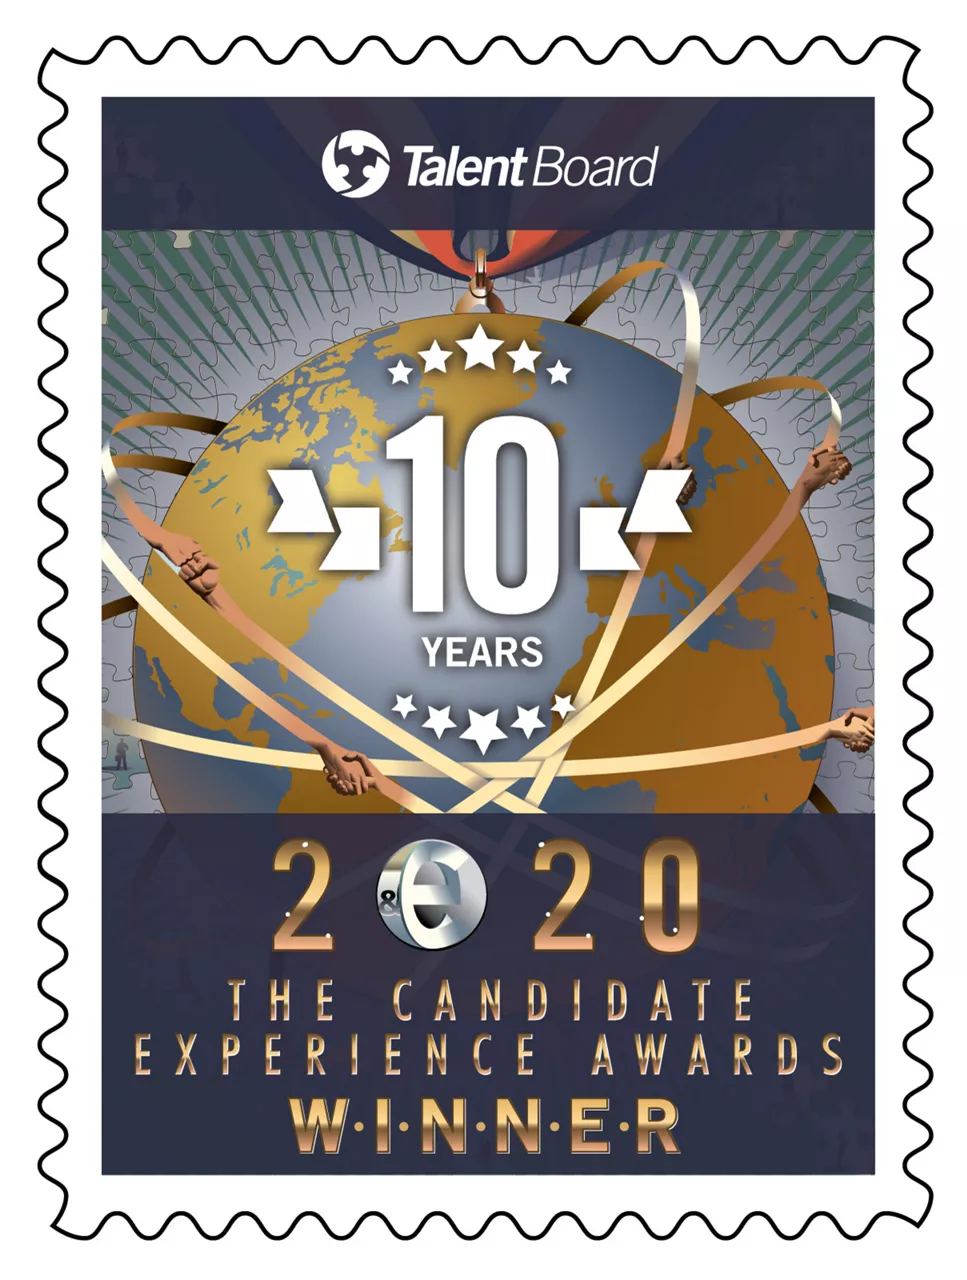 Virtusa ist Gewinner der 2020 Candidate Experience Awards von Talent Board